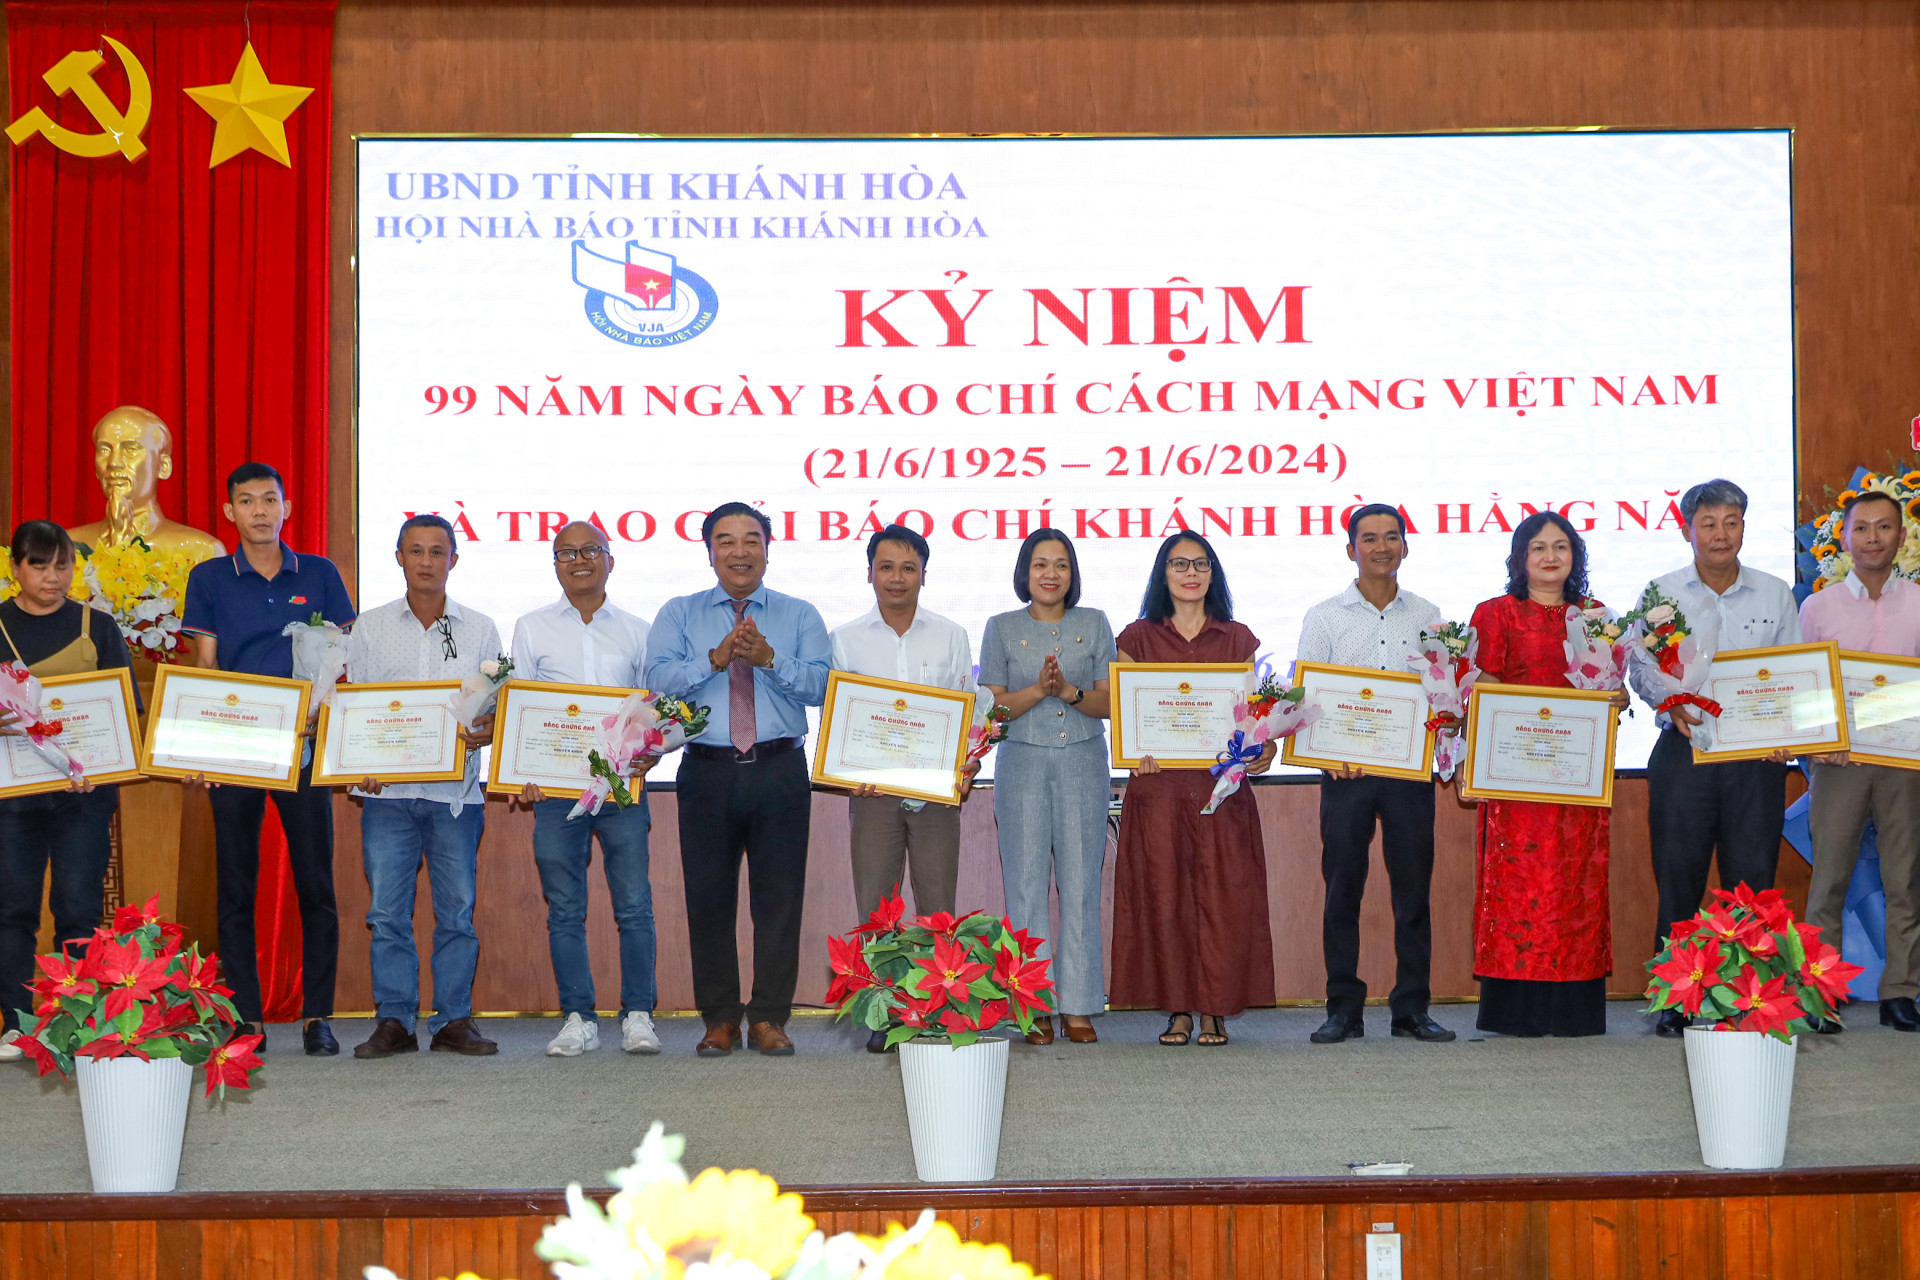 Đồng chí Trần Thu Mai cùng lãnh đạo Hội Nhà báo tỉnh trao giải Khuyến khích cho các tác giả, đại diện nhóm tác giả.